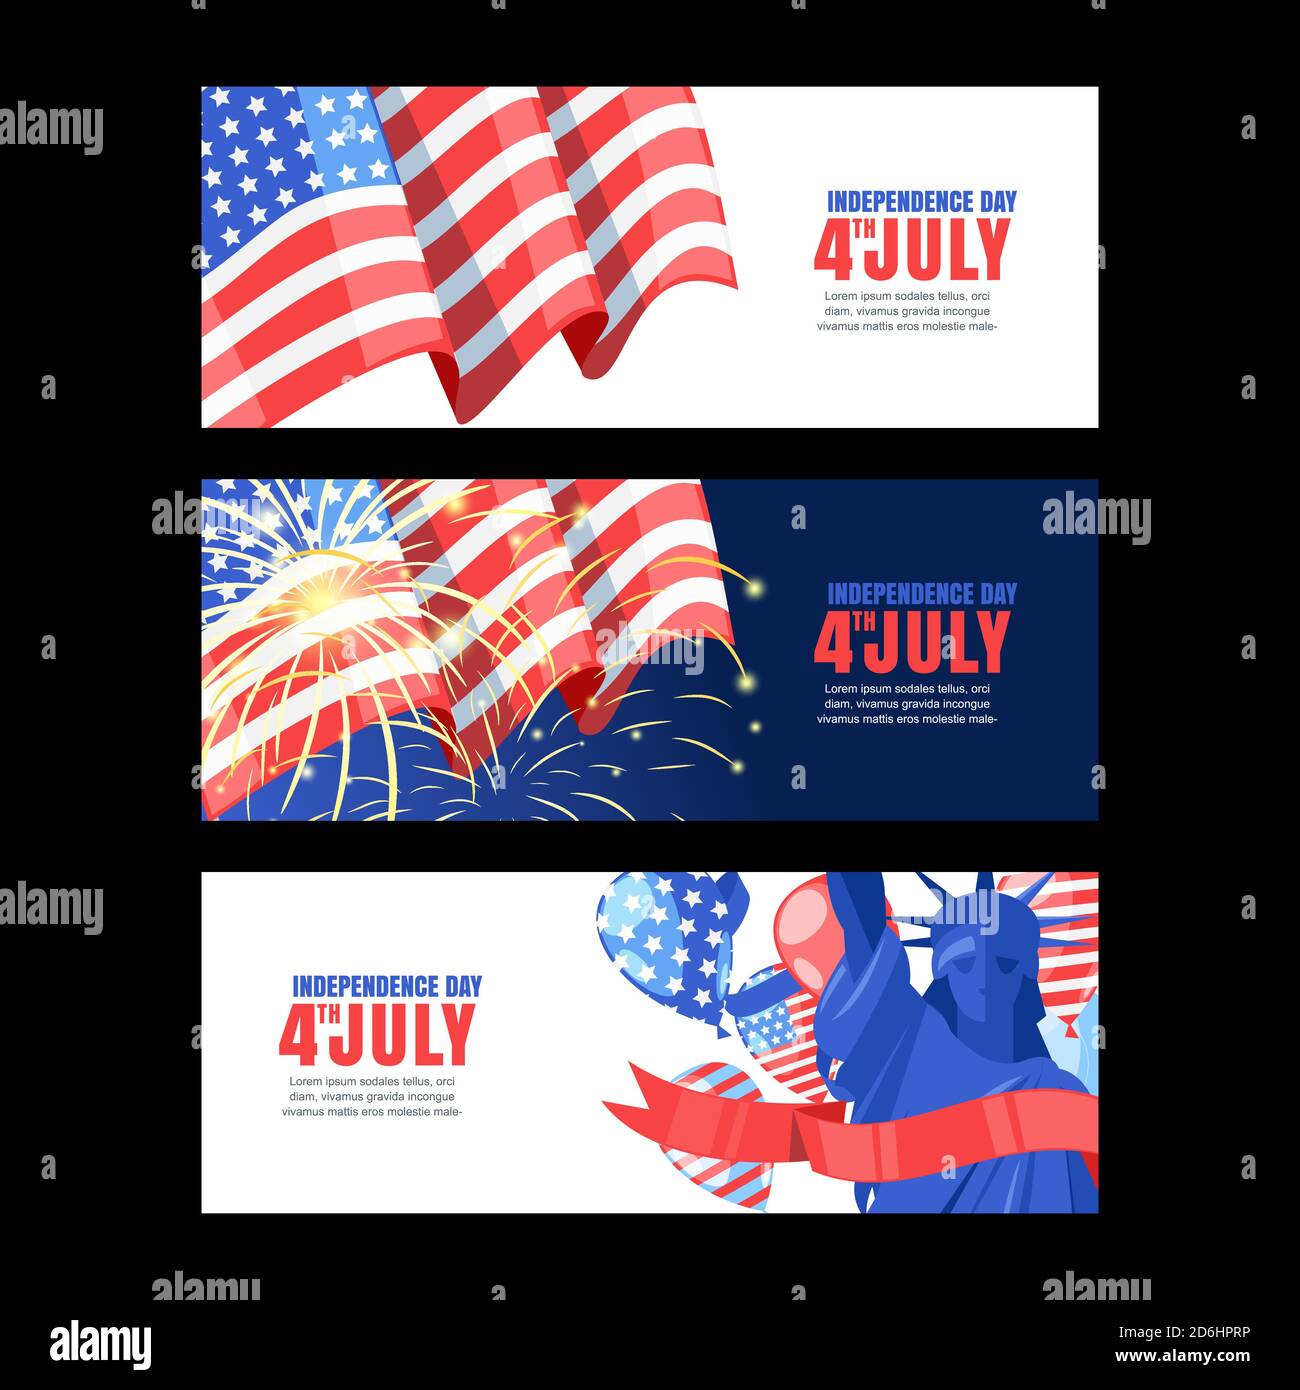 4 juillet, jour de l'indépendance des États-Unis. Banderoles horizontales pour les fêtes avec drapeau, hommage et Statue de la liberté. Fond vectoriel blanc et bleu. Illustration de Vecteur